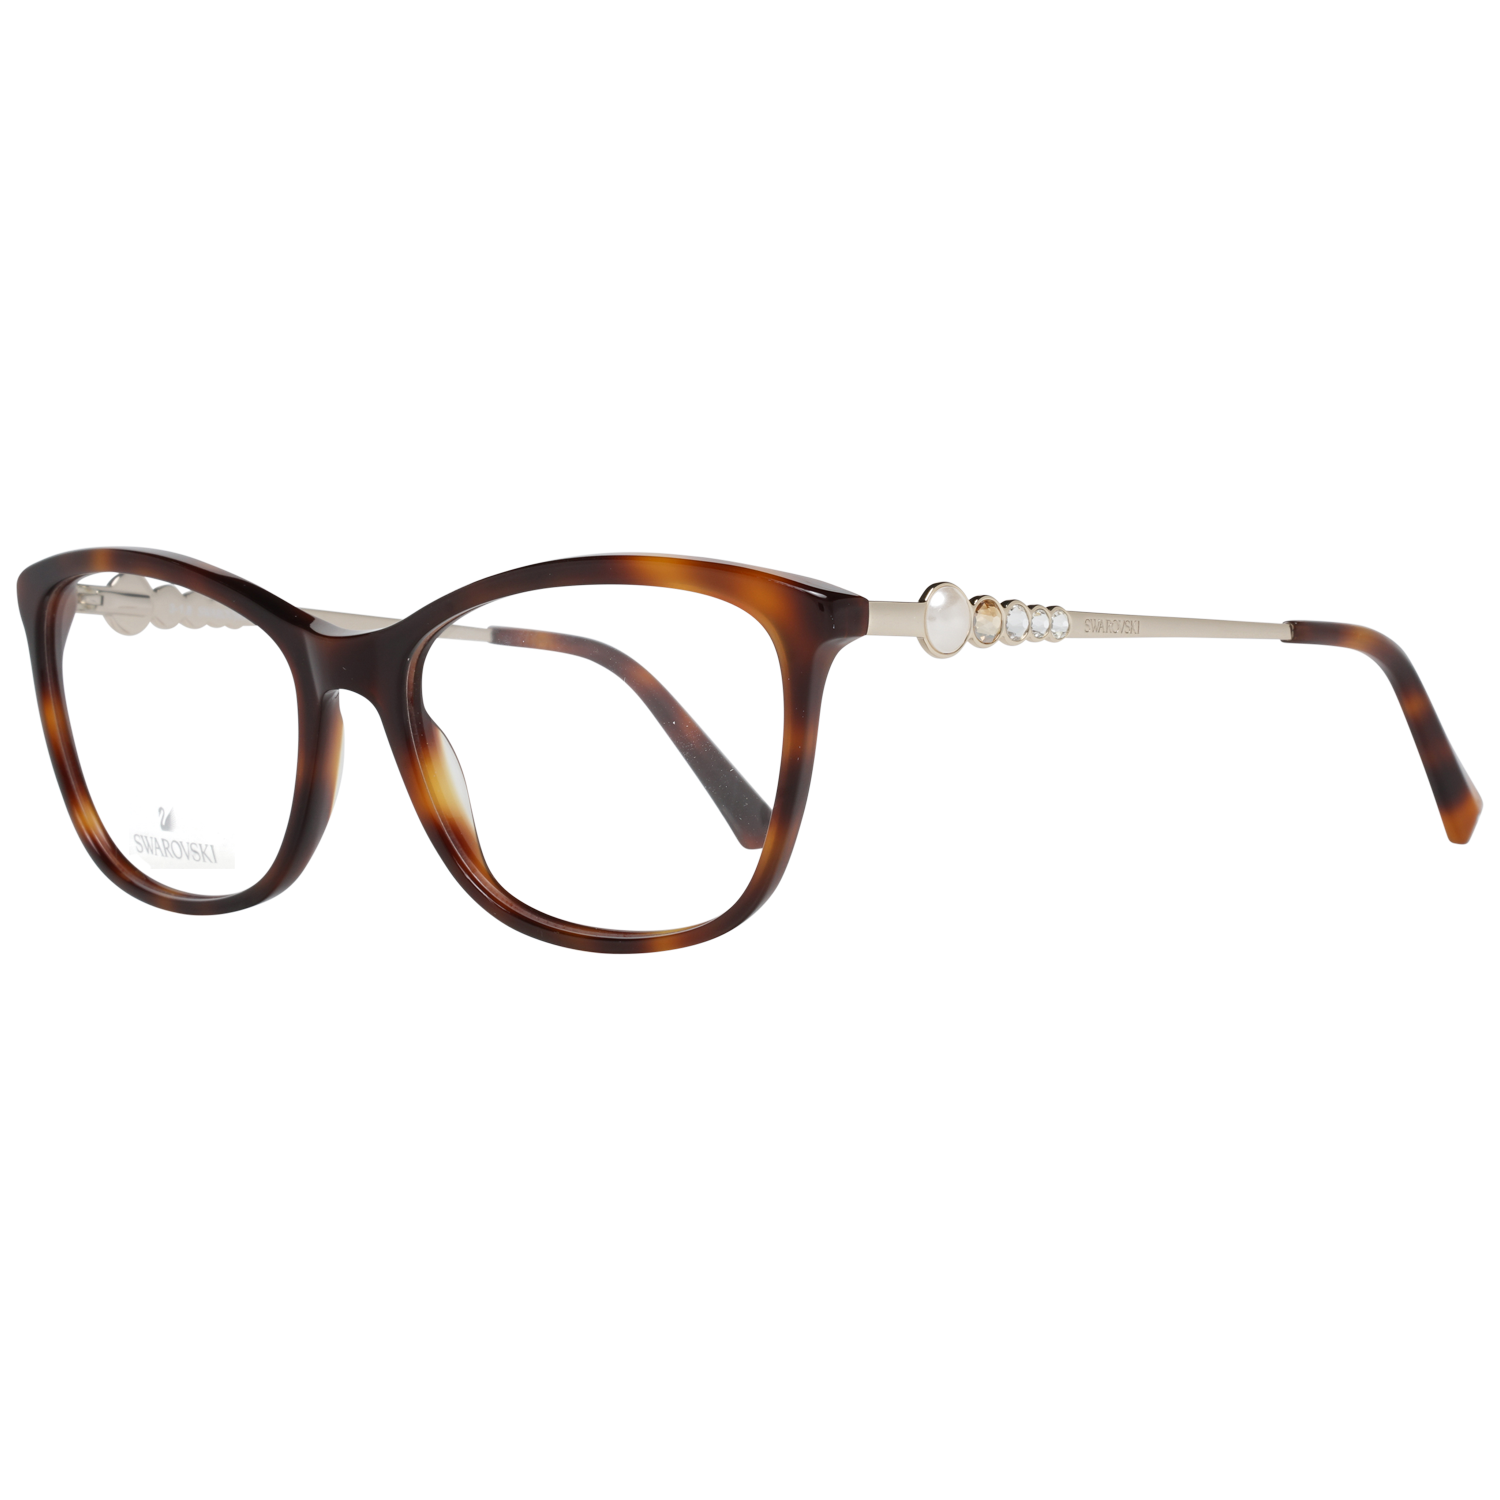 Swarovski Frames Swarovski Women Glasses Optical Frame SK5276 052 54 Eyeglasses Eyewear UK USA Australia 